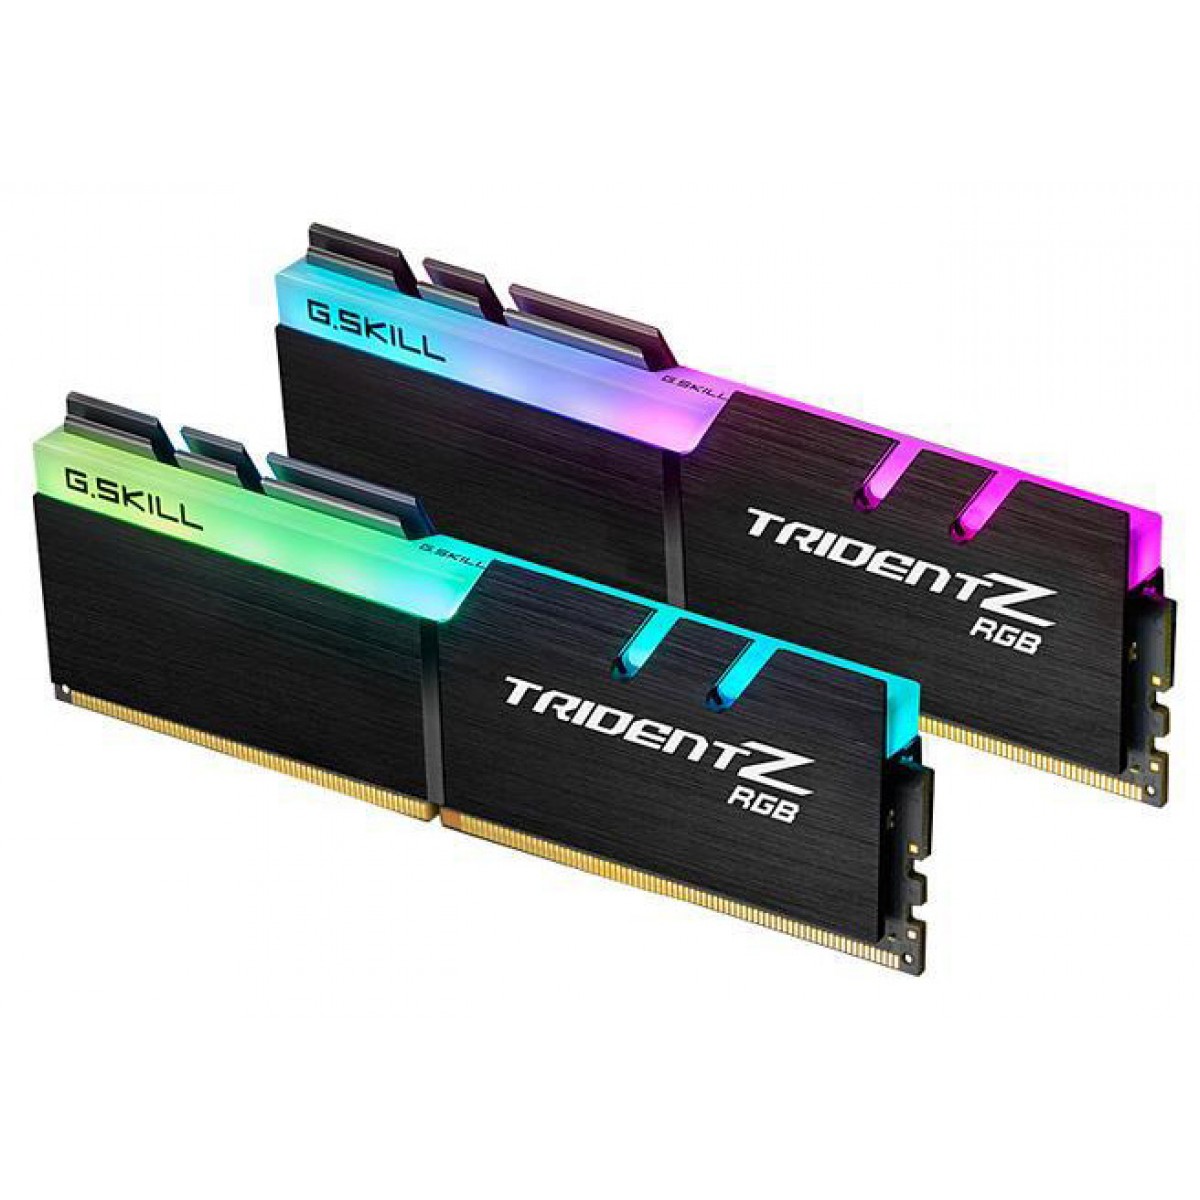 Memória DDR4 G.Skill Trident Z RGB, 16GB (2x8GB) 2400MHz, F4-2400C15D-16GTZR